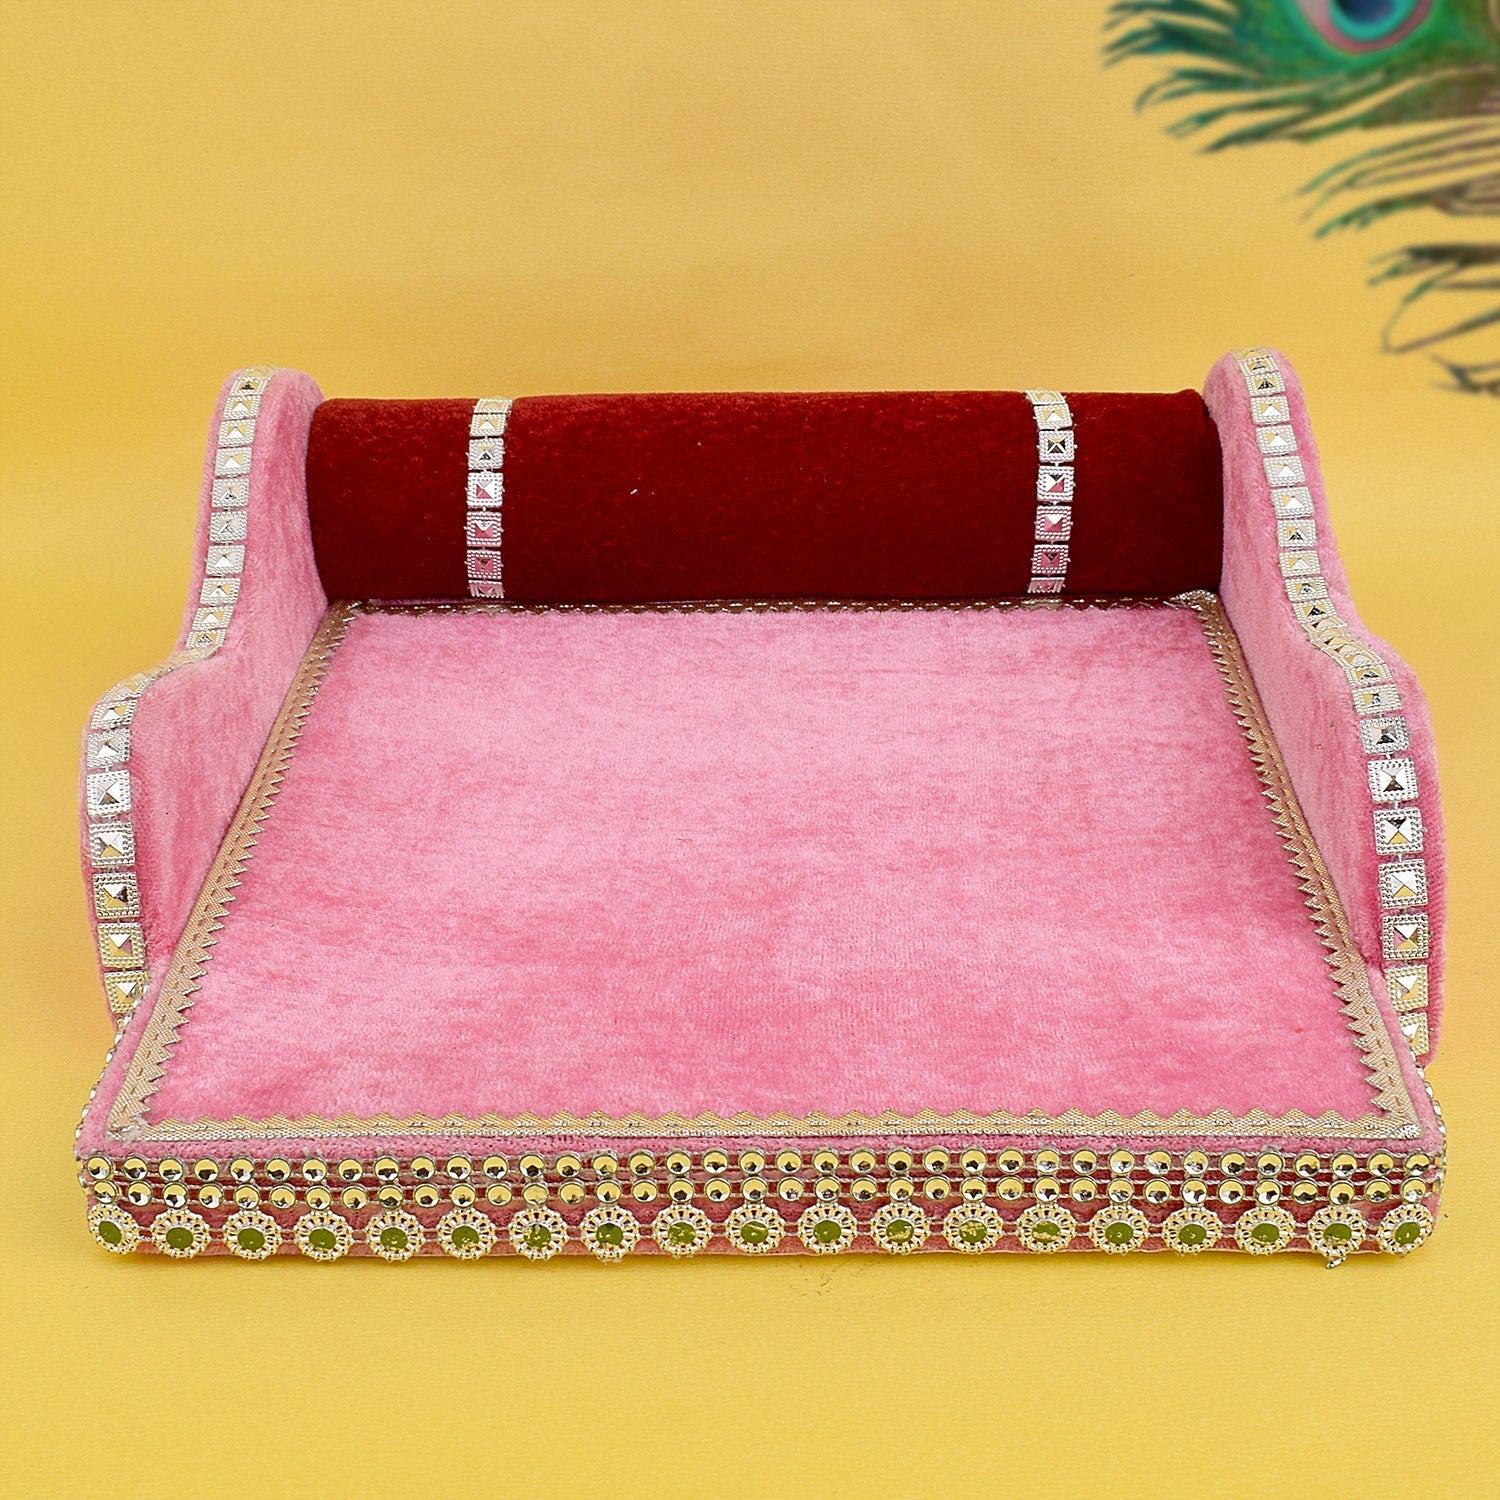 Laddu Gopal's Throne of Elegance: Velvet Bed Medium